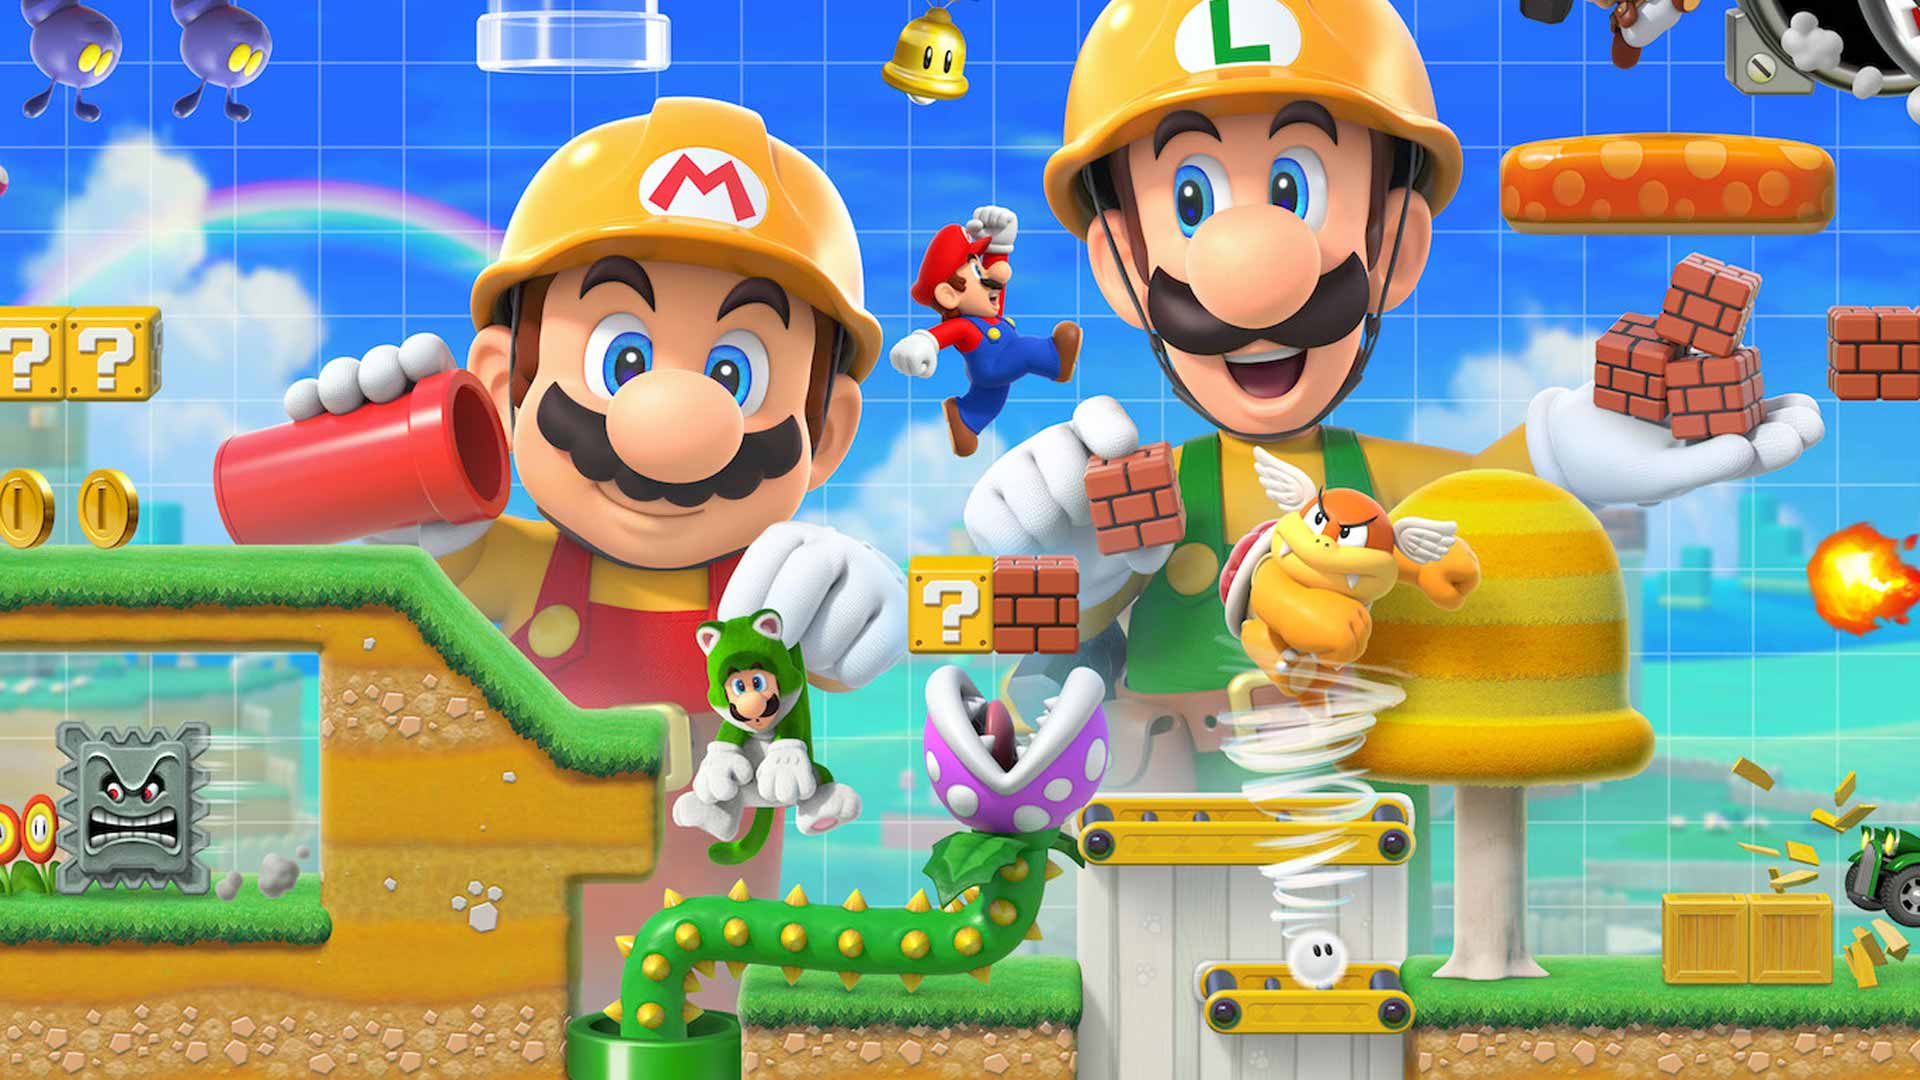 Super Mario Maker 2 traz modo história, multiplayer online e mais